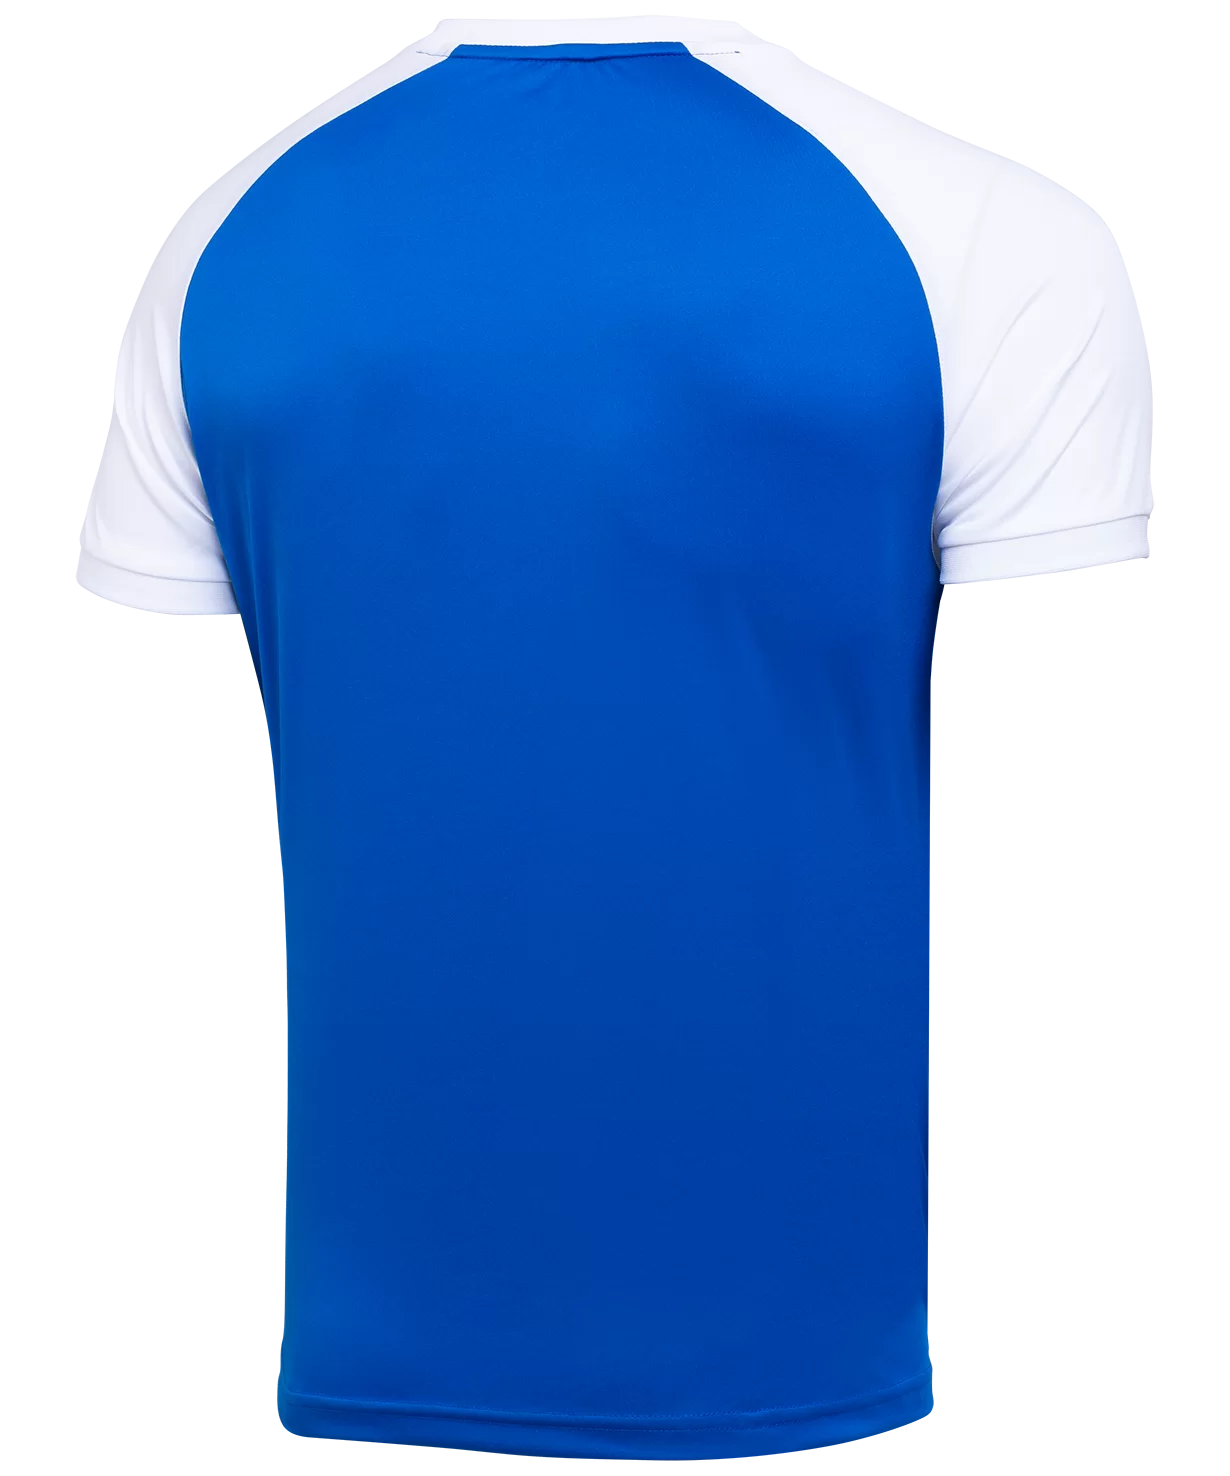 Фото Футболка игровая CAMP Reglan Jersey, синий/белый Jögel со склада магазина Спортев